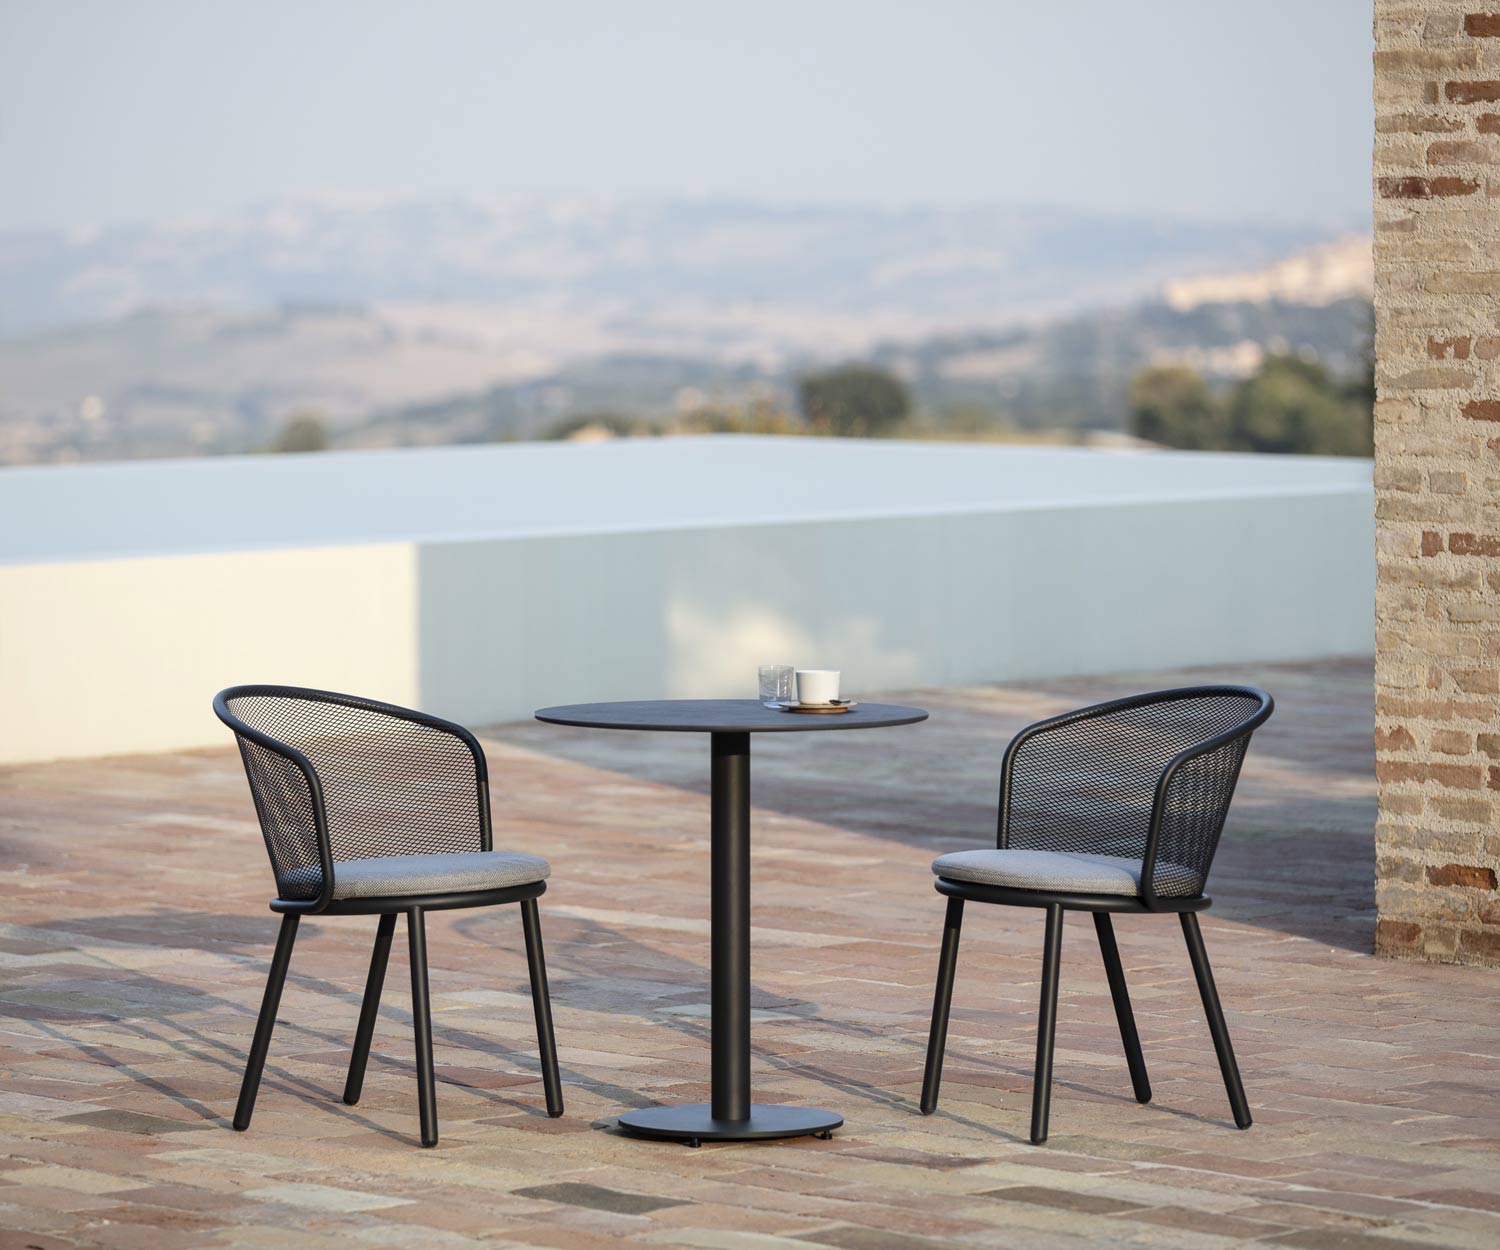 Hochwertiger Todus Baza Design Garten Stuhl mit Beistelltisch auf Terrasse